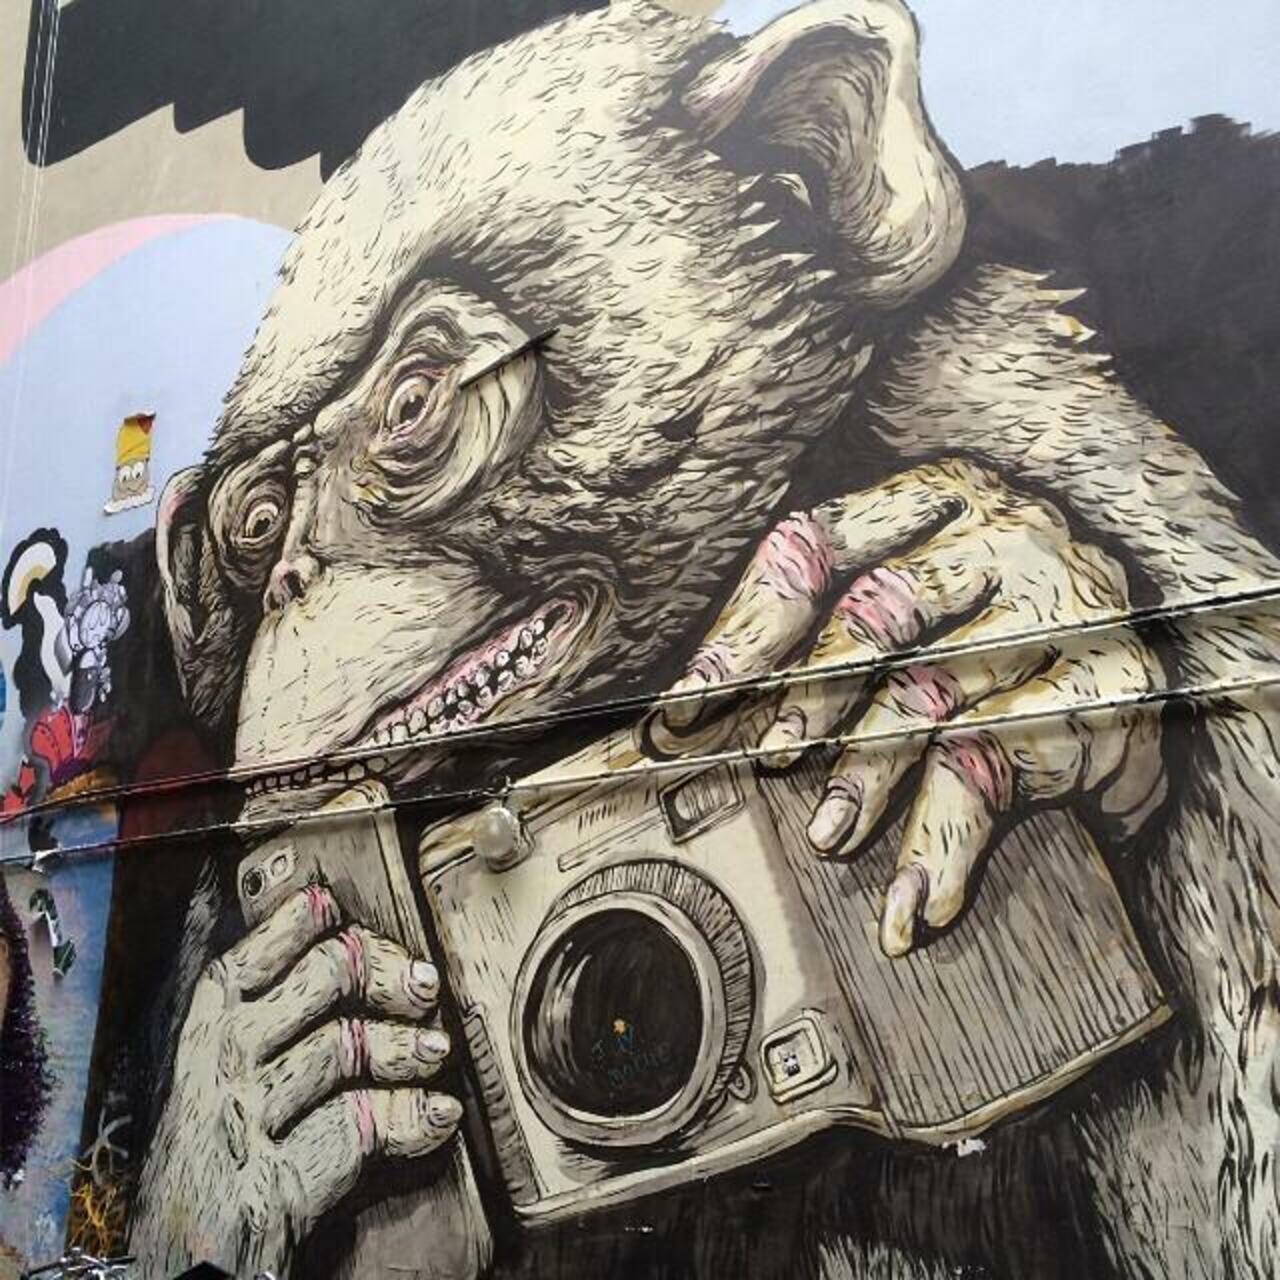 RT @StArtEverywhere: #Berlin #Allemagne #streetart #street #art #urbanart #urbantag #graffiti by becombegeek http://t.co/KinjzpiX95